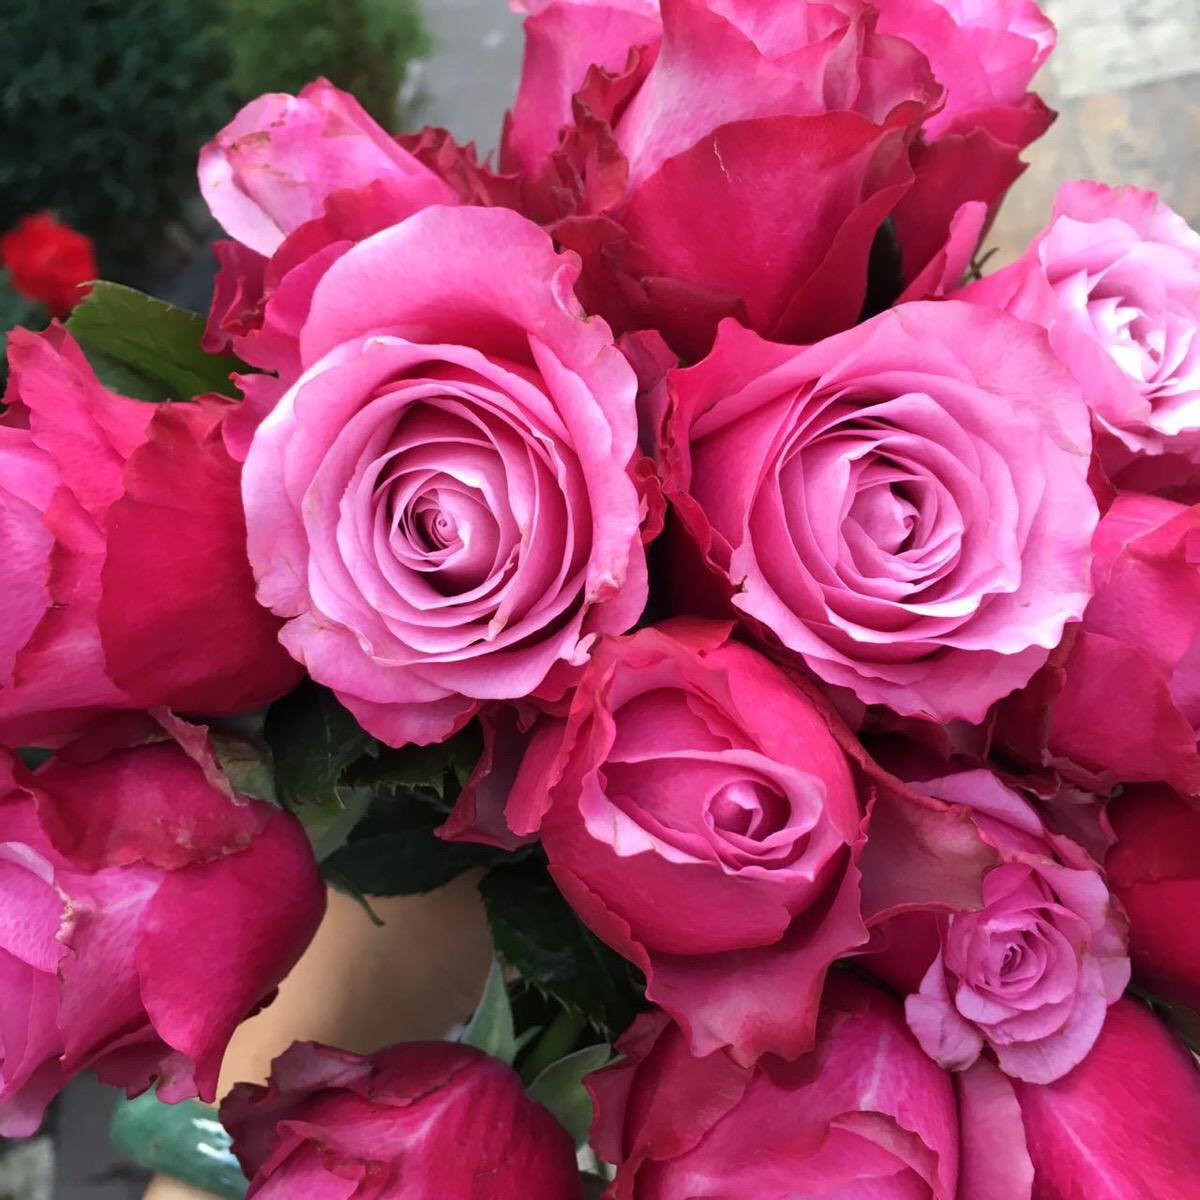 魅影,昆明新品种,粉紫双色,昆明玫瑰里比较高贵的颜色